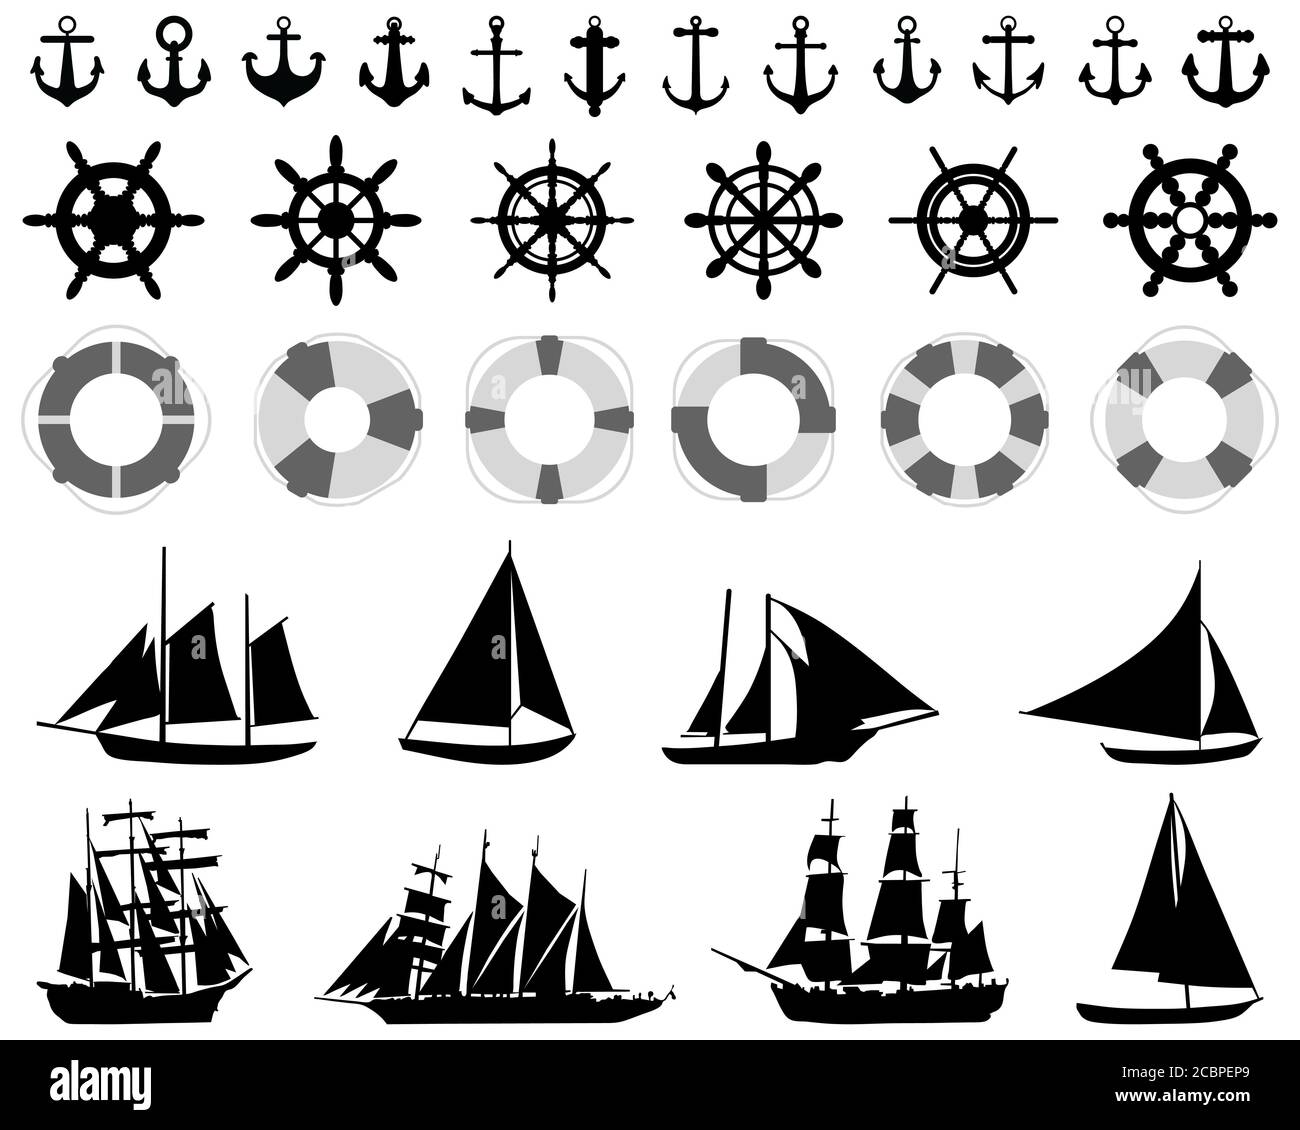 Ikonen von Anchores, Rudern, Rettungsschwimmern, Segelbooten auf weißem Hintergrund Stockfoto